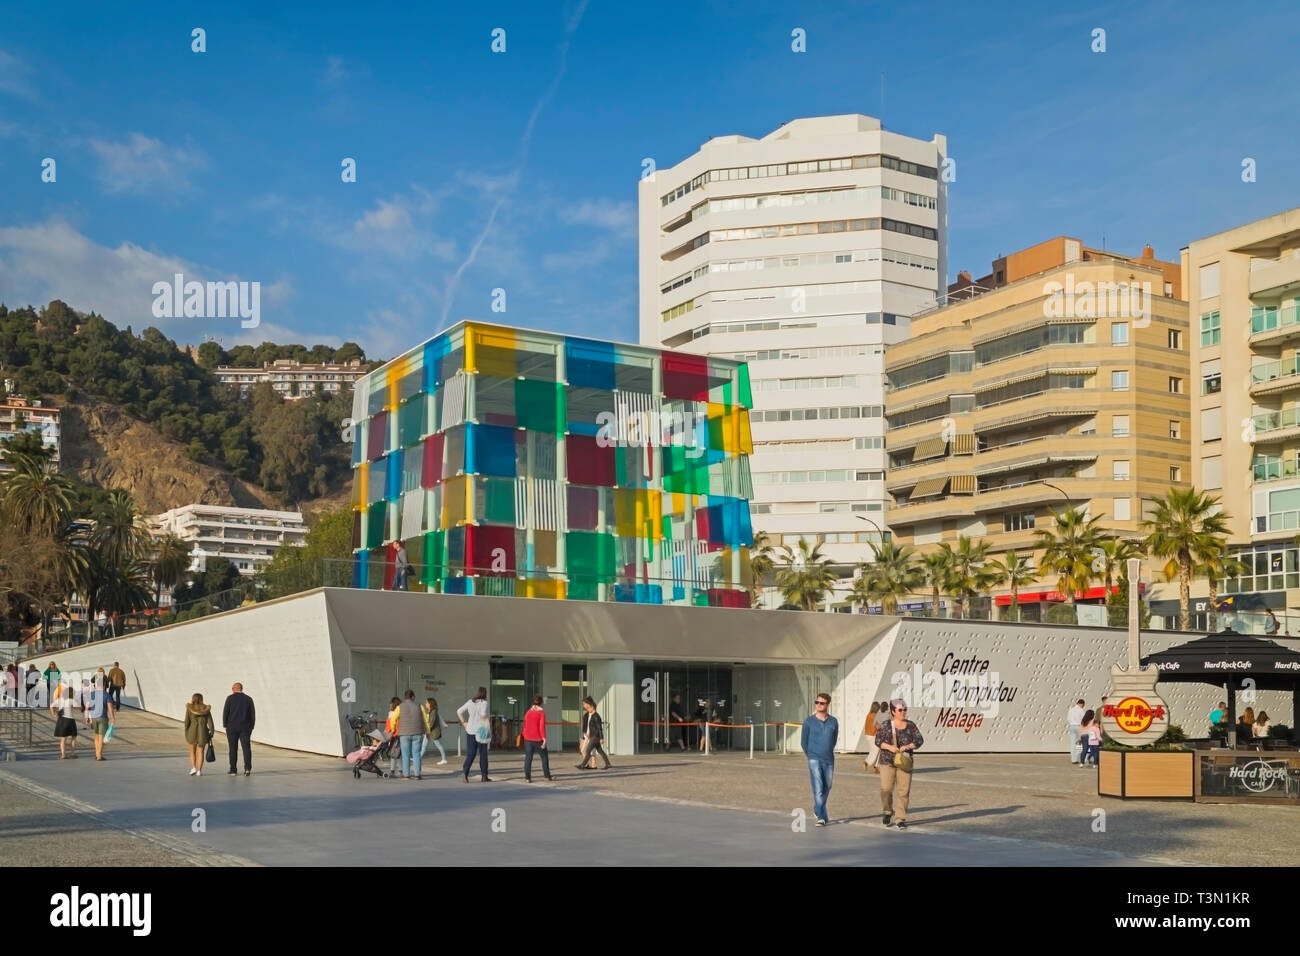 Le cube de verre distinctif du Centre Pompidou musée sur Muelle Uno, Malaga. La structure a été conçue par l'artiste français Daniel Buren (1938 - ). Banque D'Images